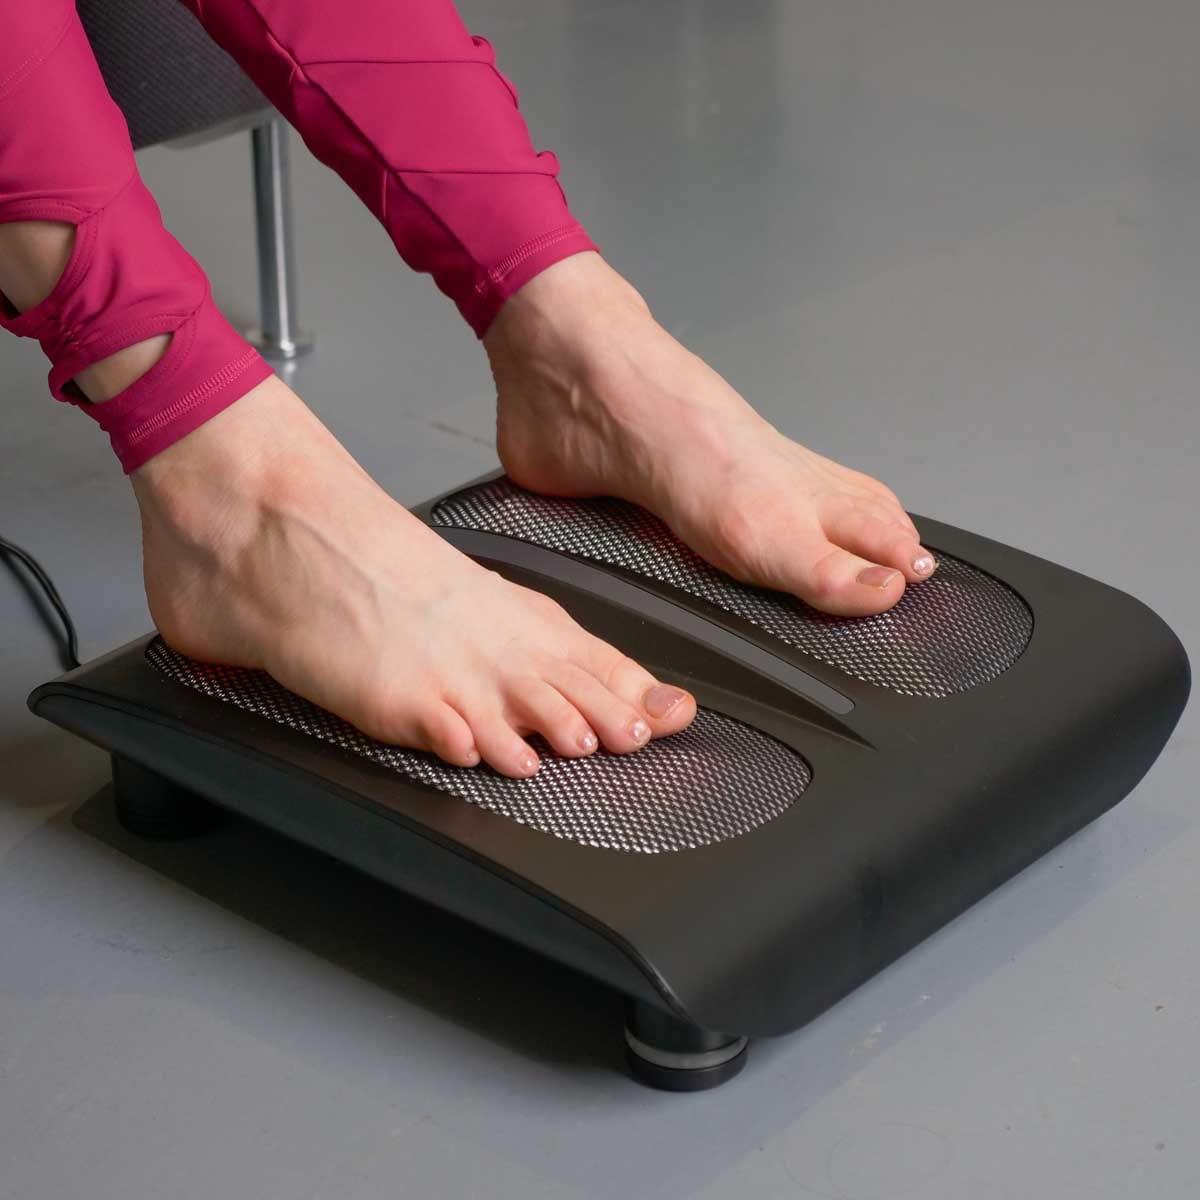 Tranqwil Foot Massager Machine with Heat, Shiatsu Massage, Kneading, and  Vibration